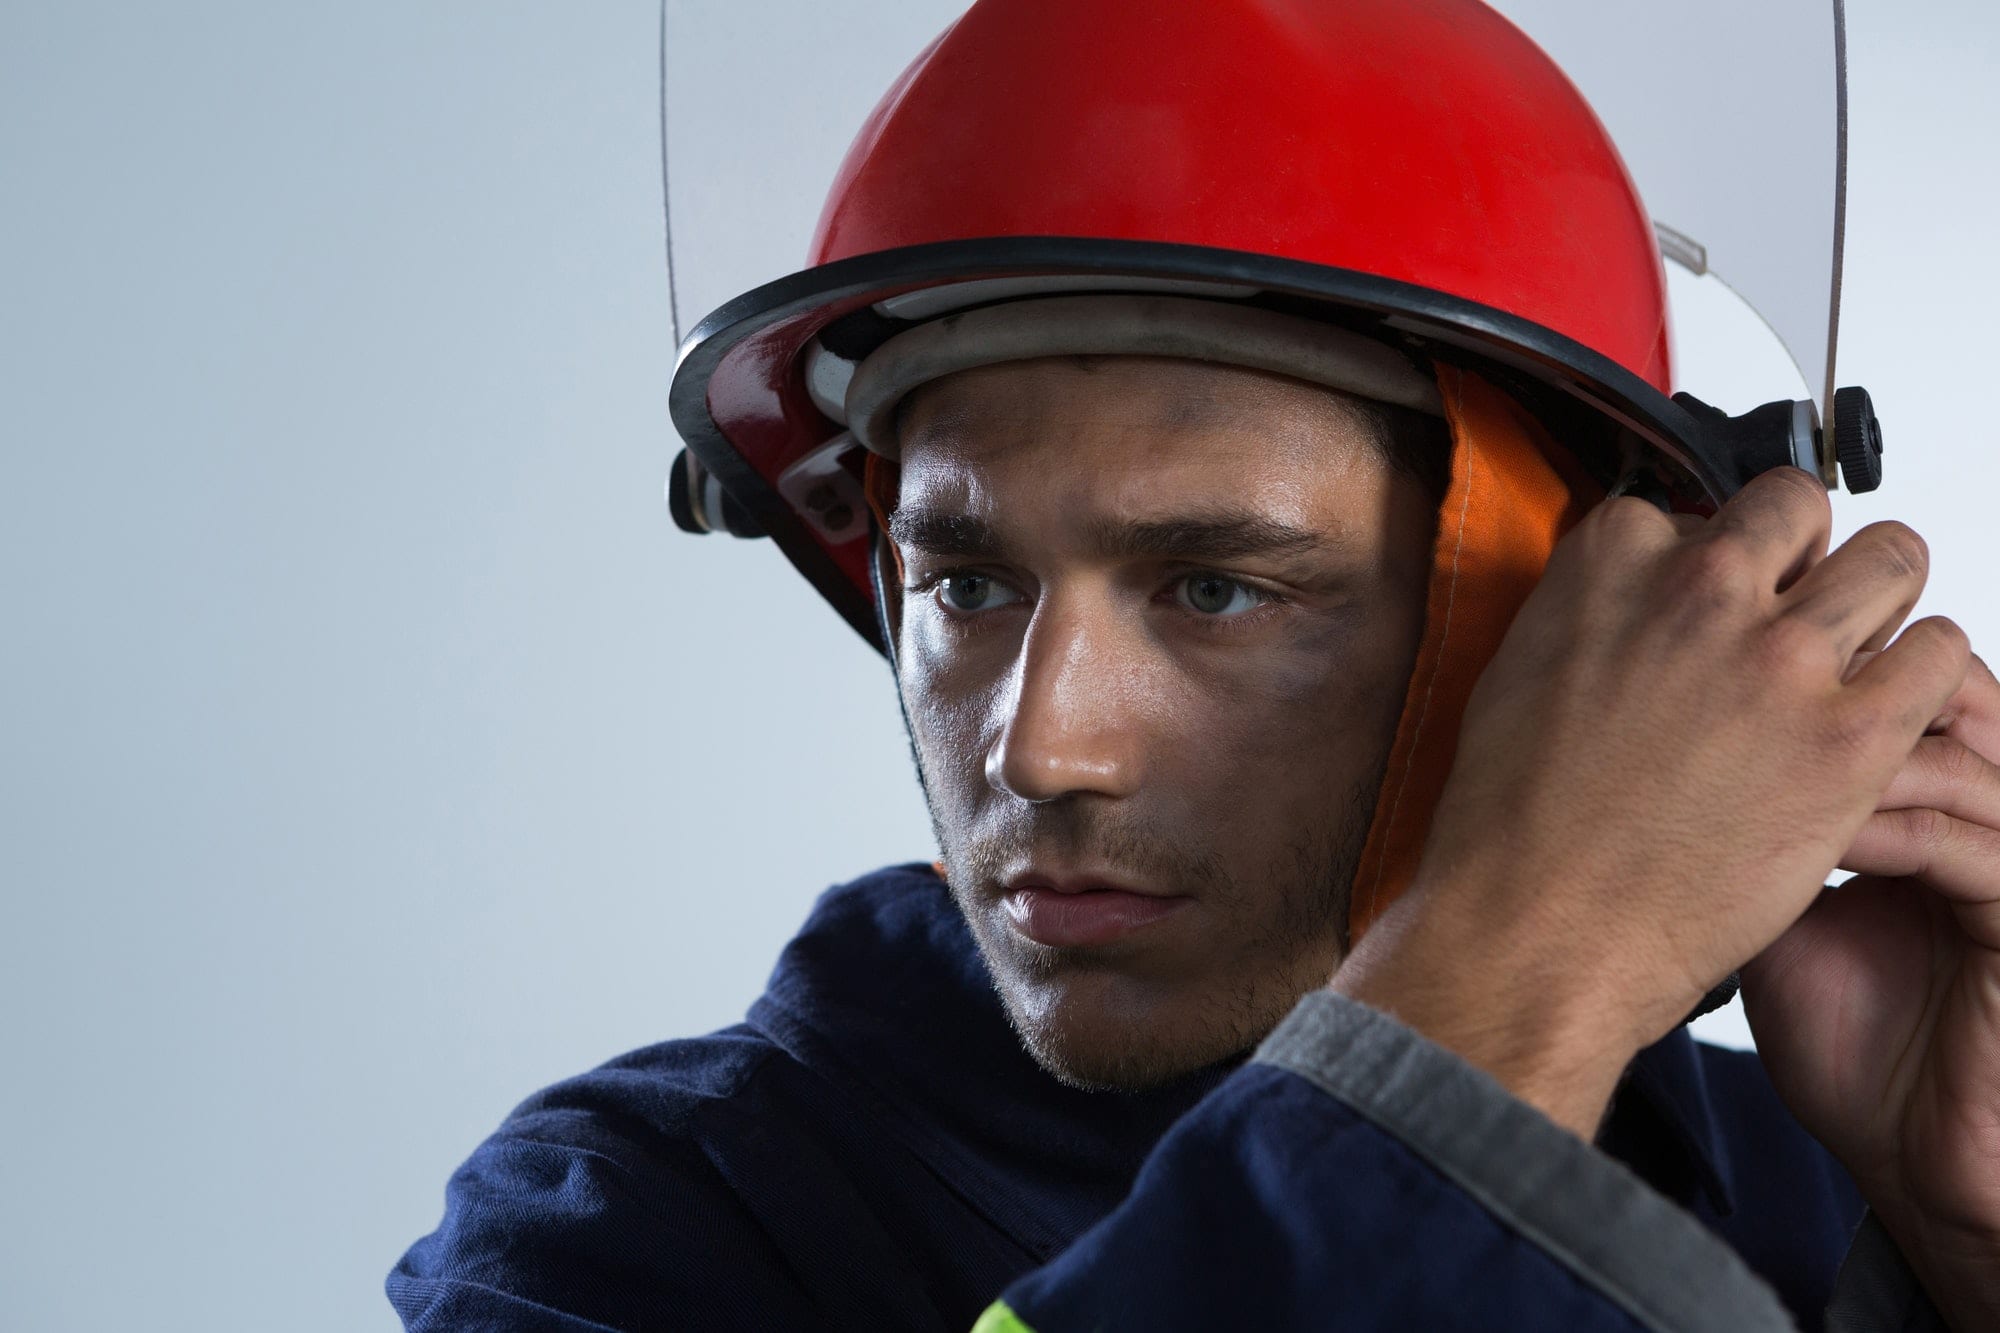 Fireman adjusting his safety helmet